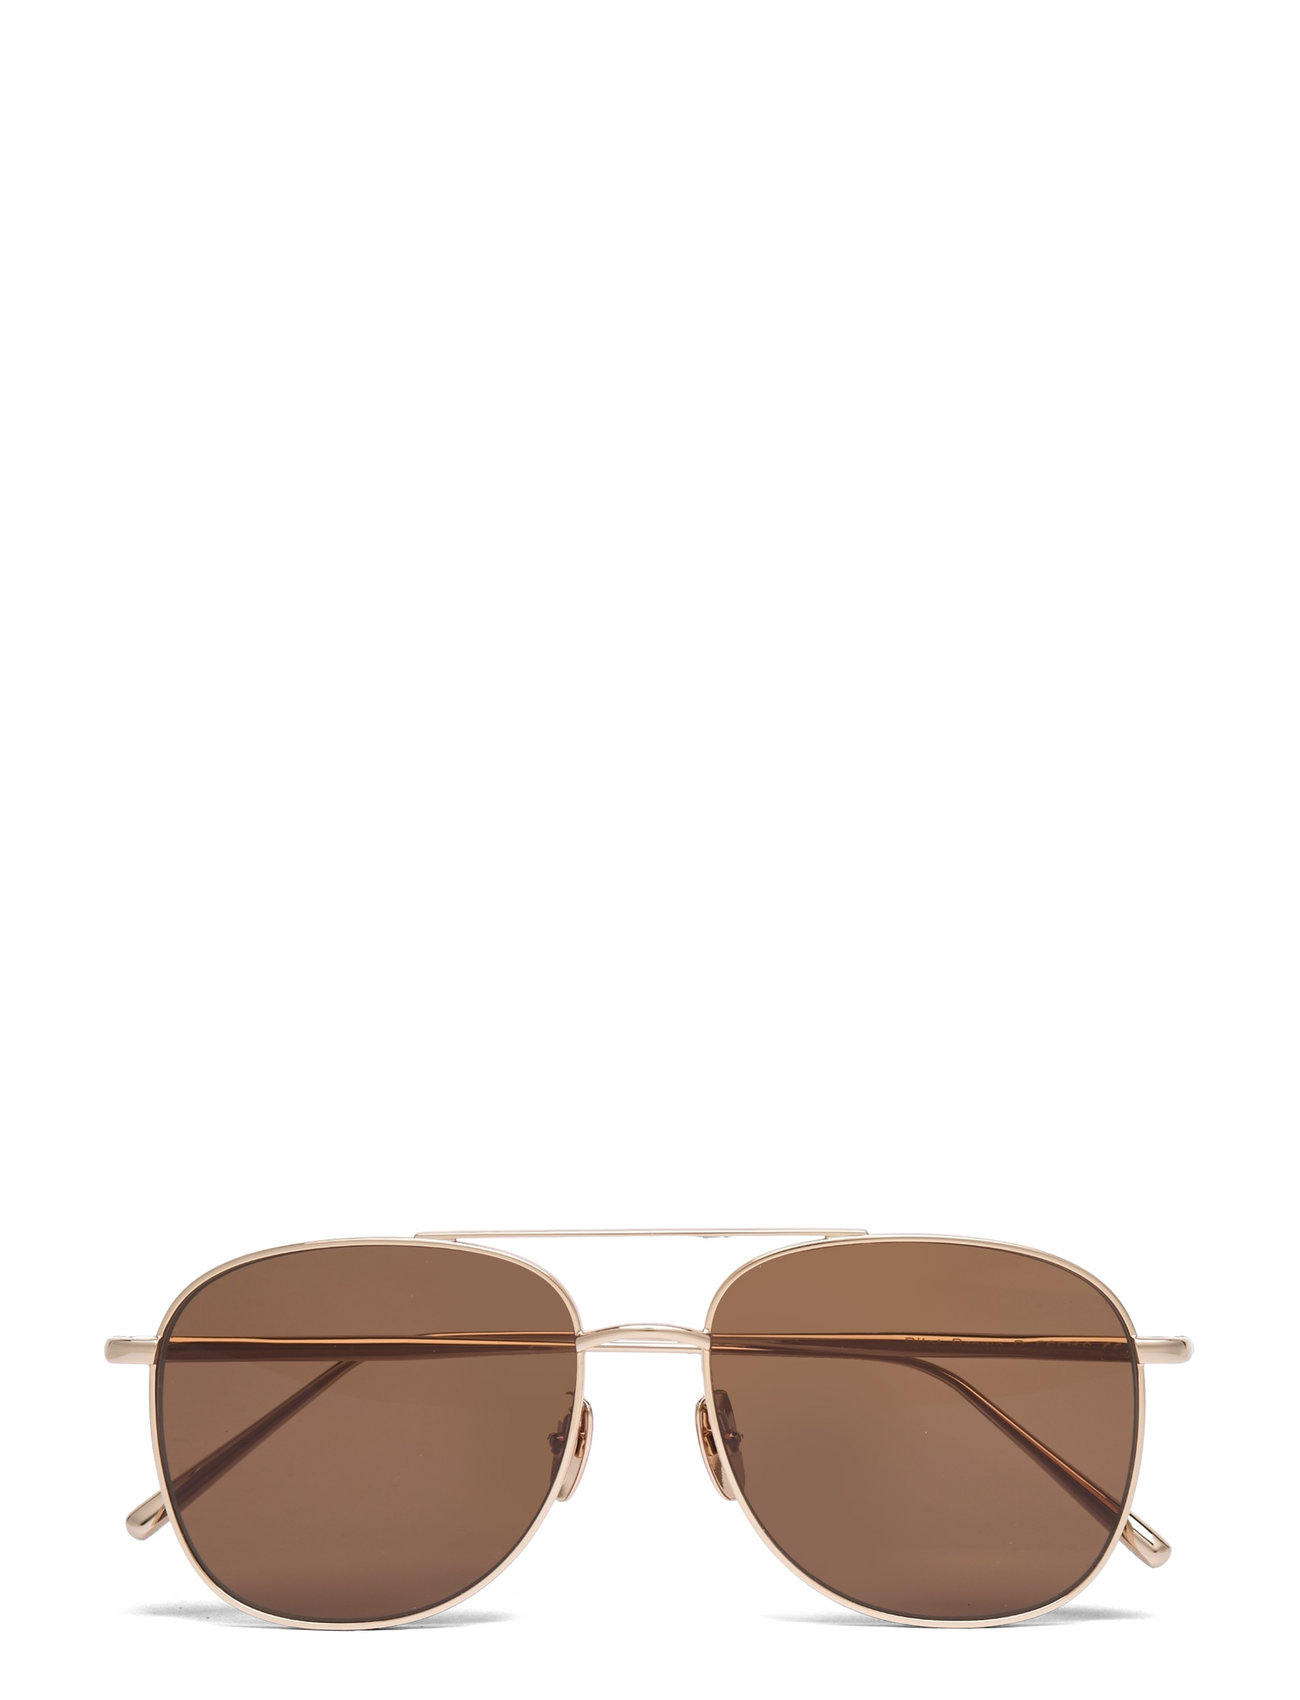 Eyewear Pilot Soft Gold/brown Round - Boozt.com